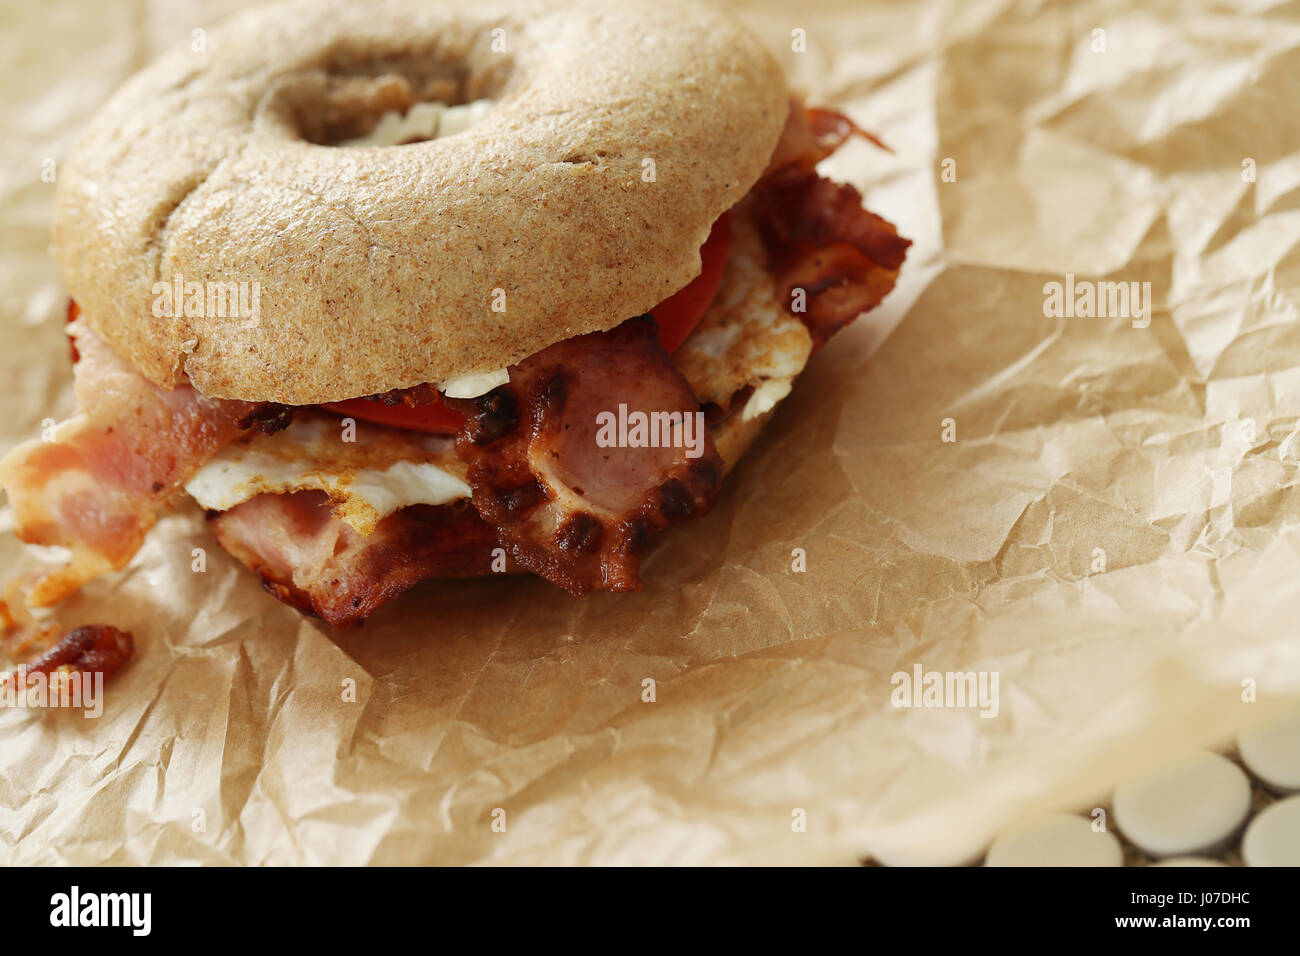 Bagel sandwich Stock Photo